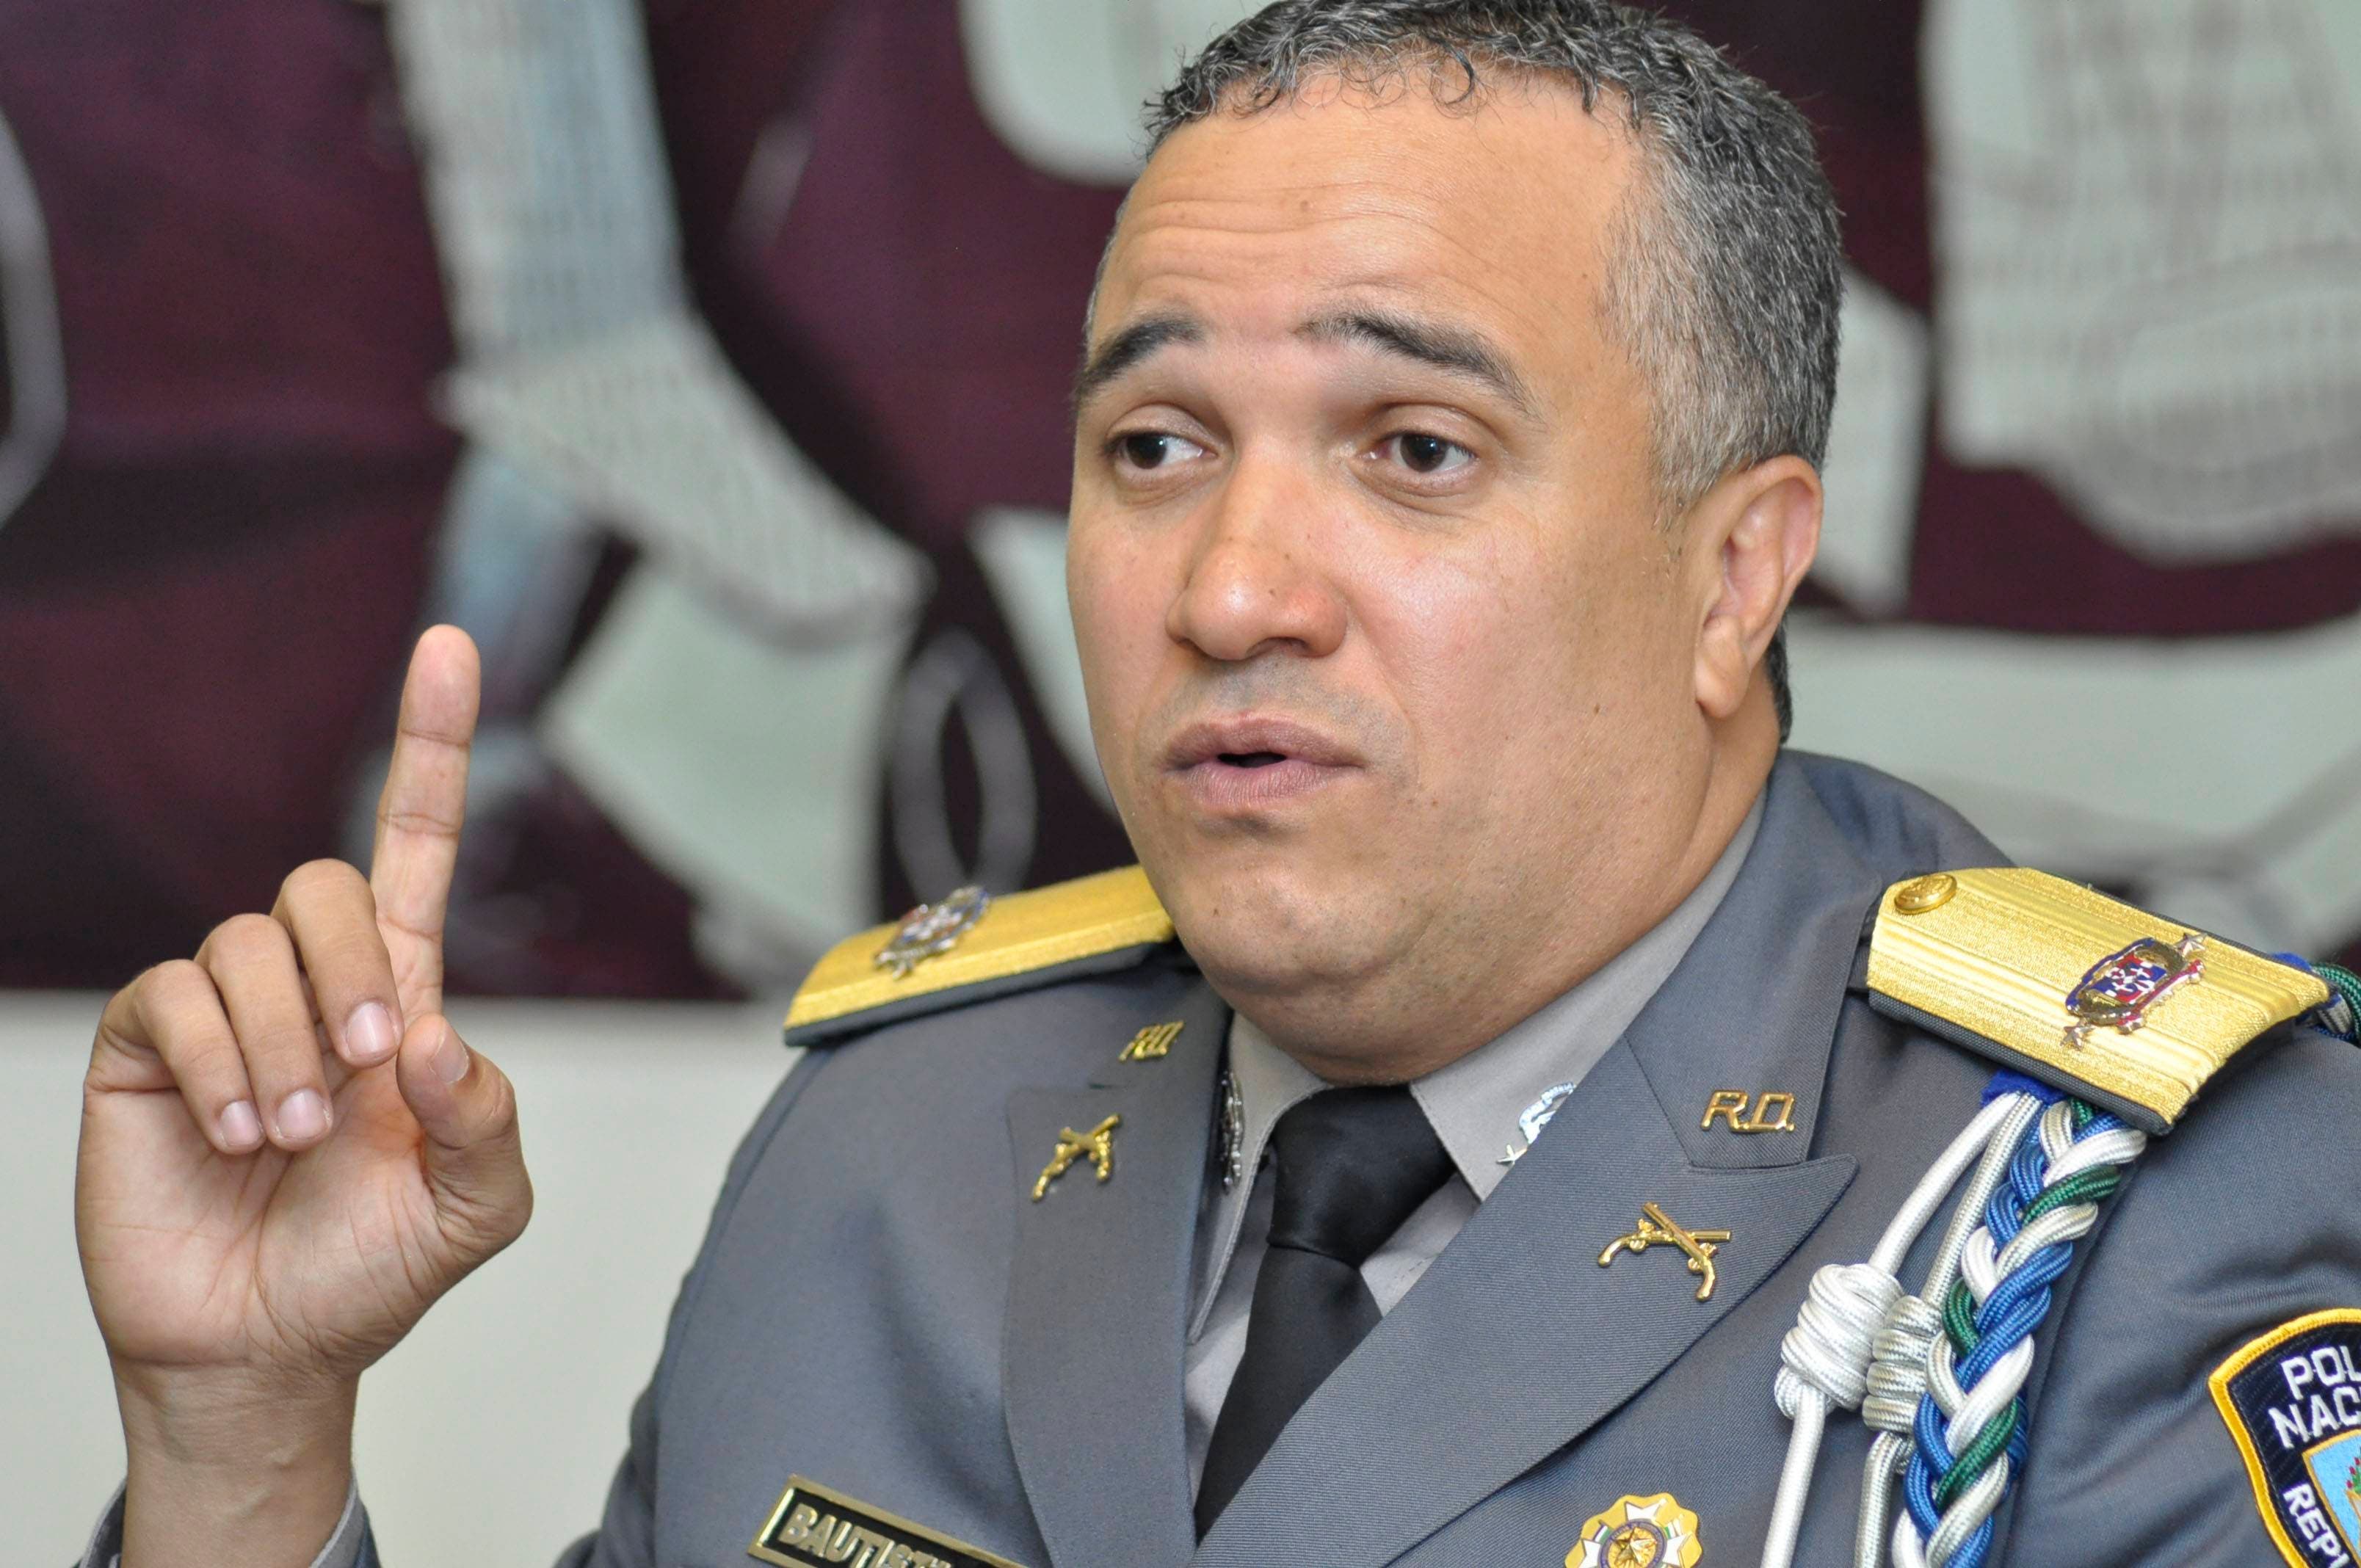 Video: ¿Está muerto o anda de parranda? Director de la Policía habla sobre Quirinito